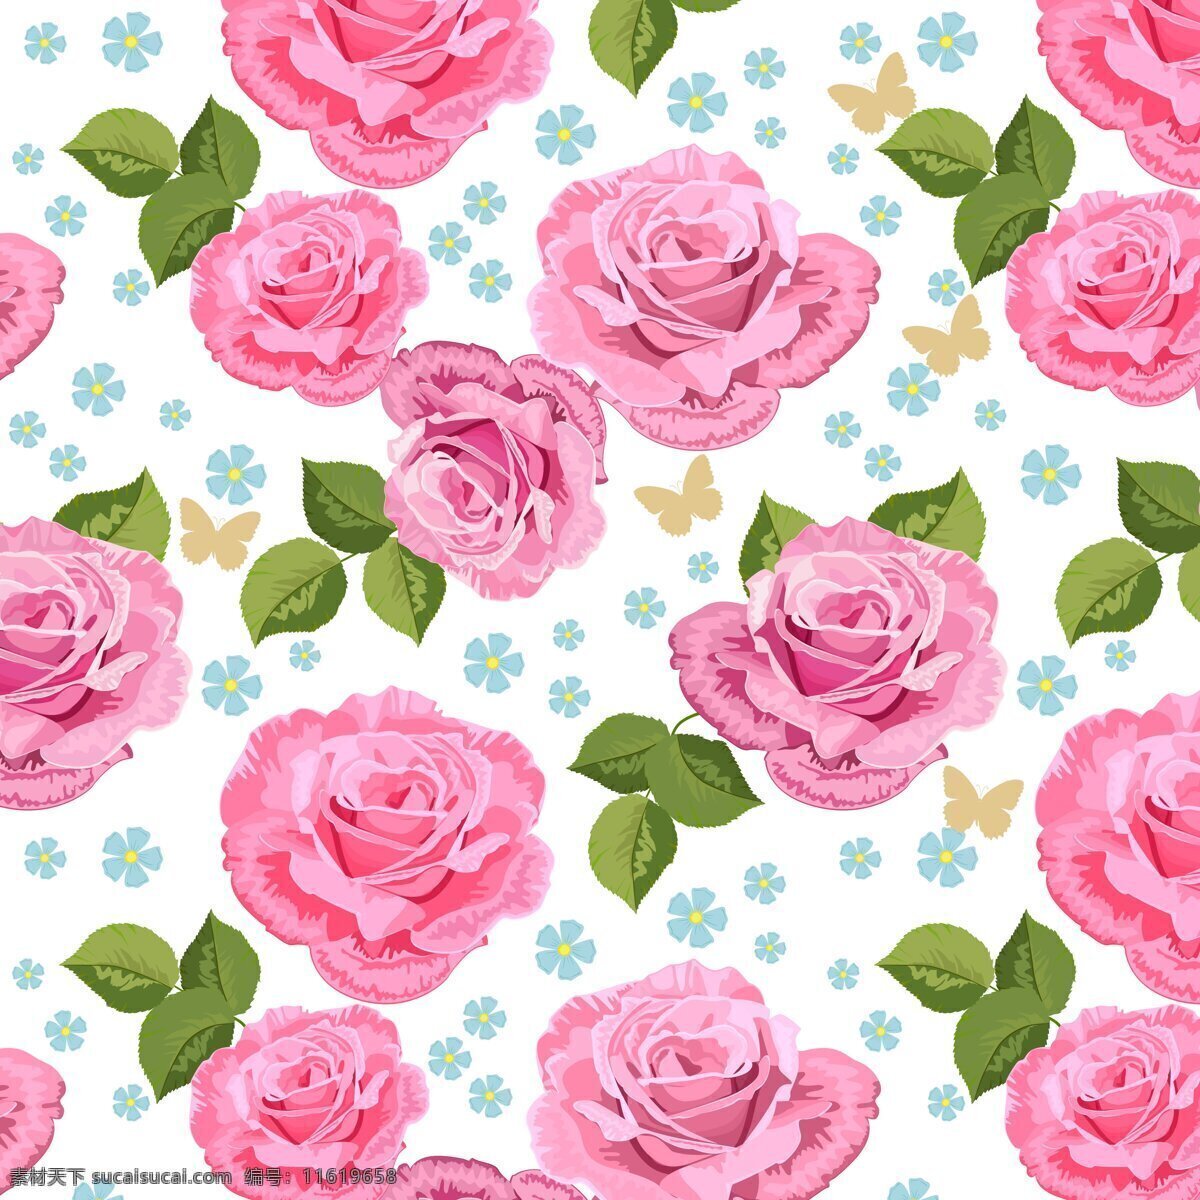 玫瑰花背景 清新背景 玫瑰花 粉色花朵 花卉 玫瑰背景 底纹背景